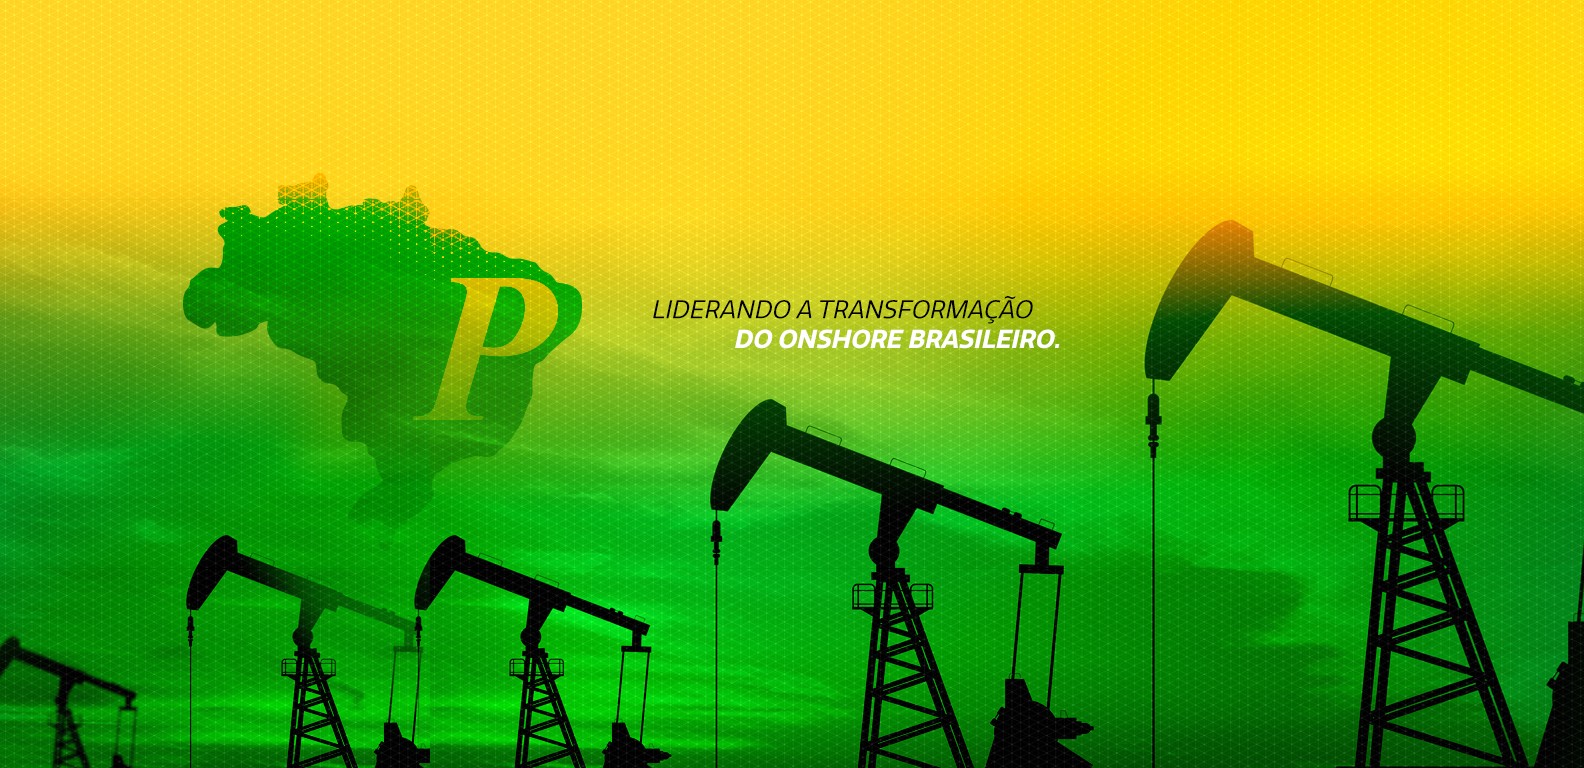 PetroReconcavo, óleo e gás, onshore